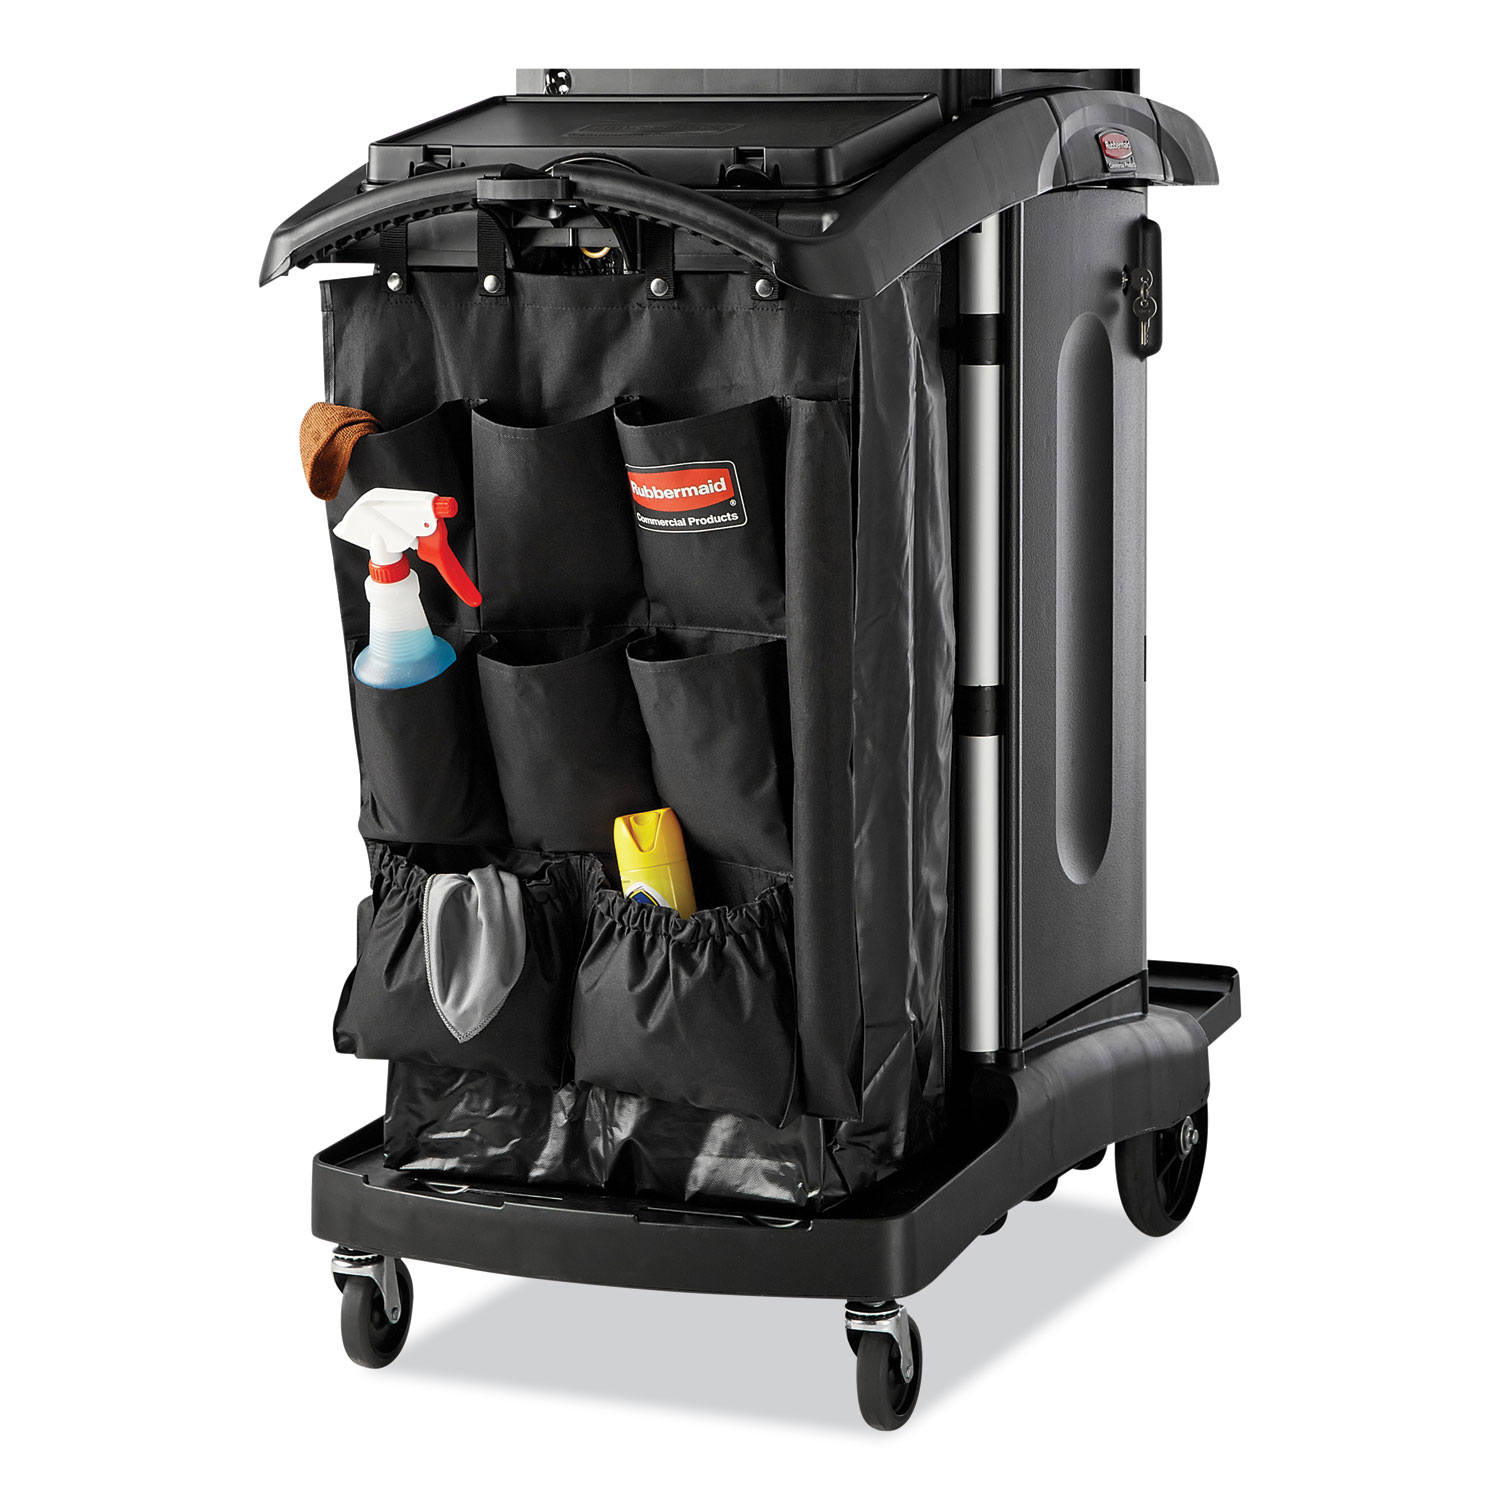 Plastic Housekeeping Cart, Deluxe Premium w/ Doors